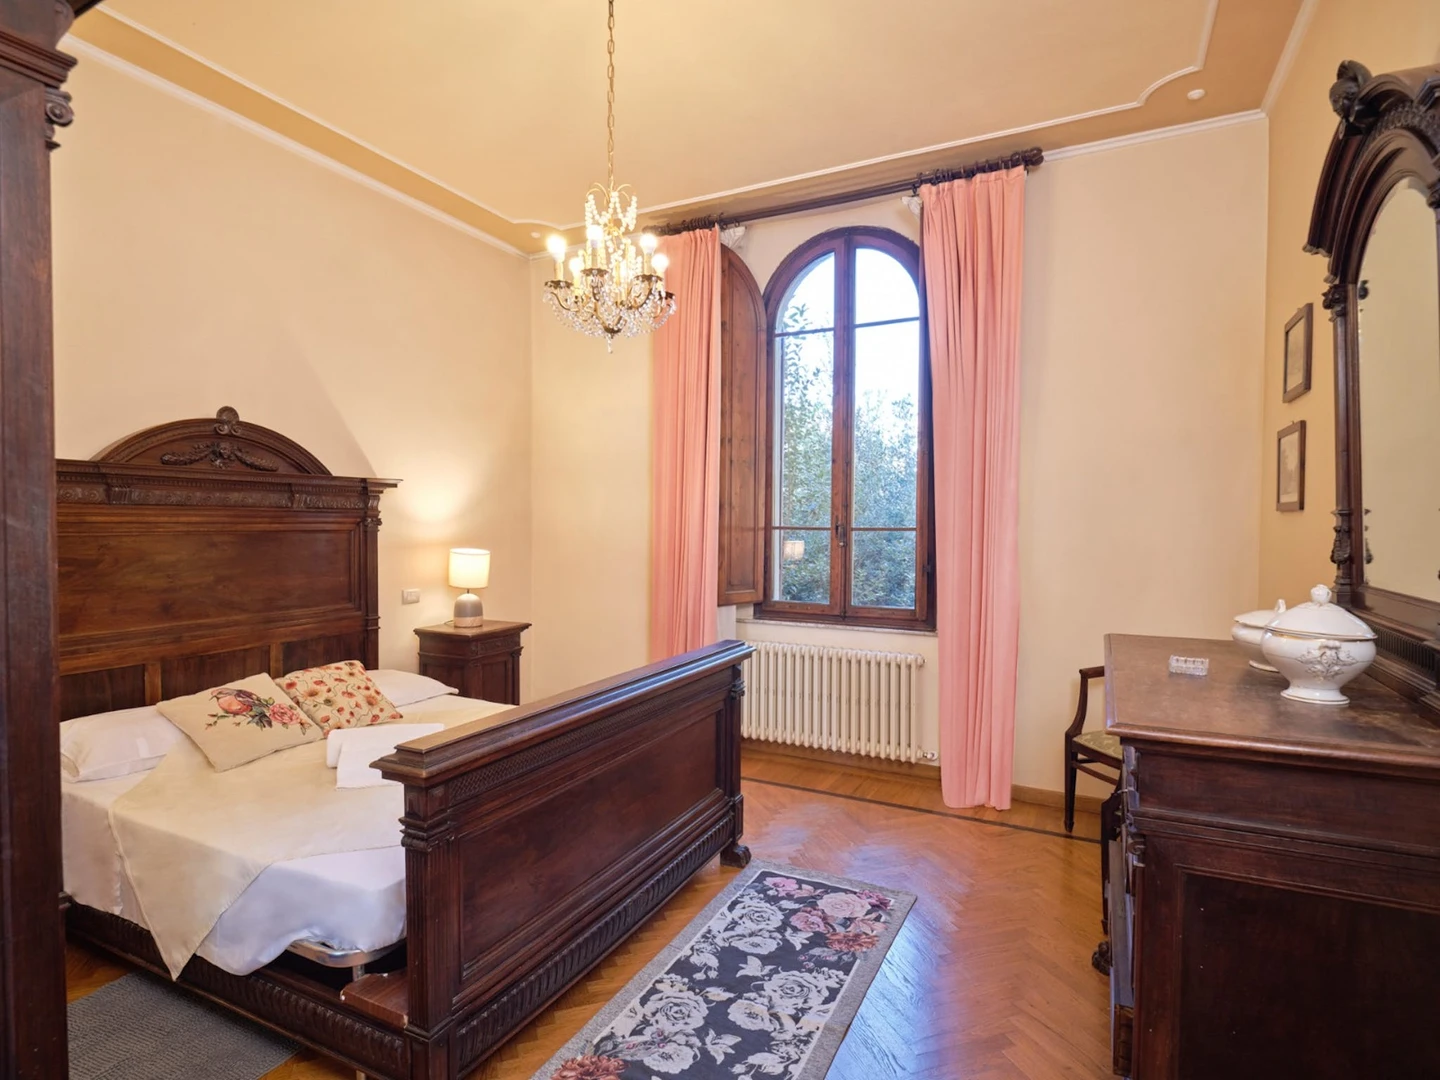 Chambre individuelle bon marché à Sienne